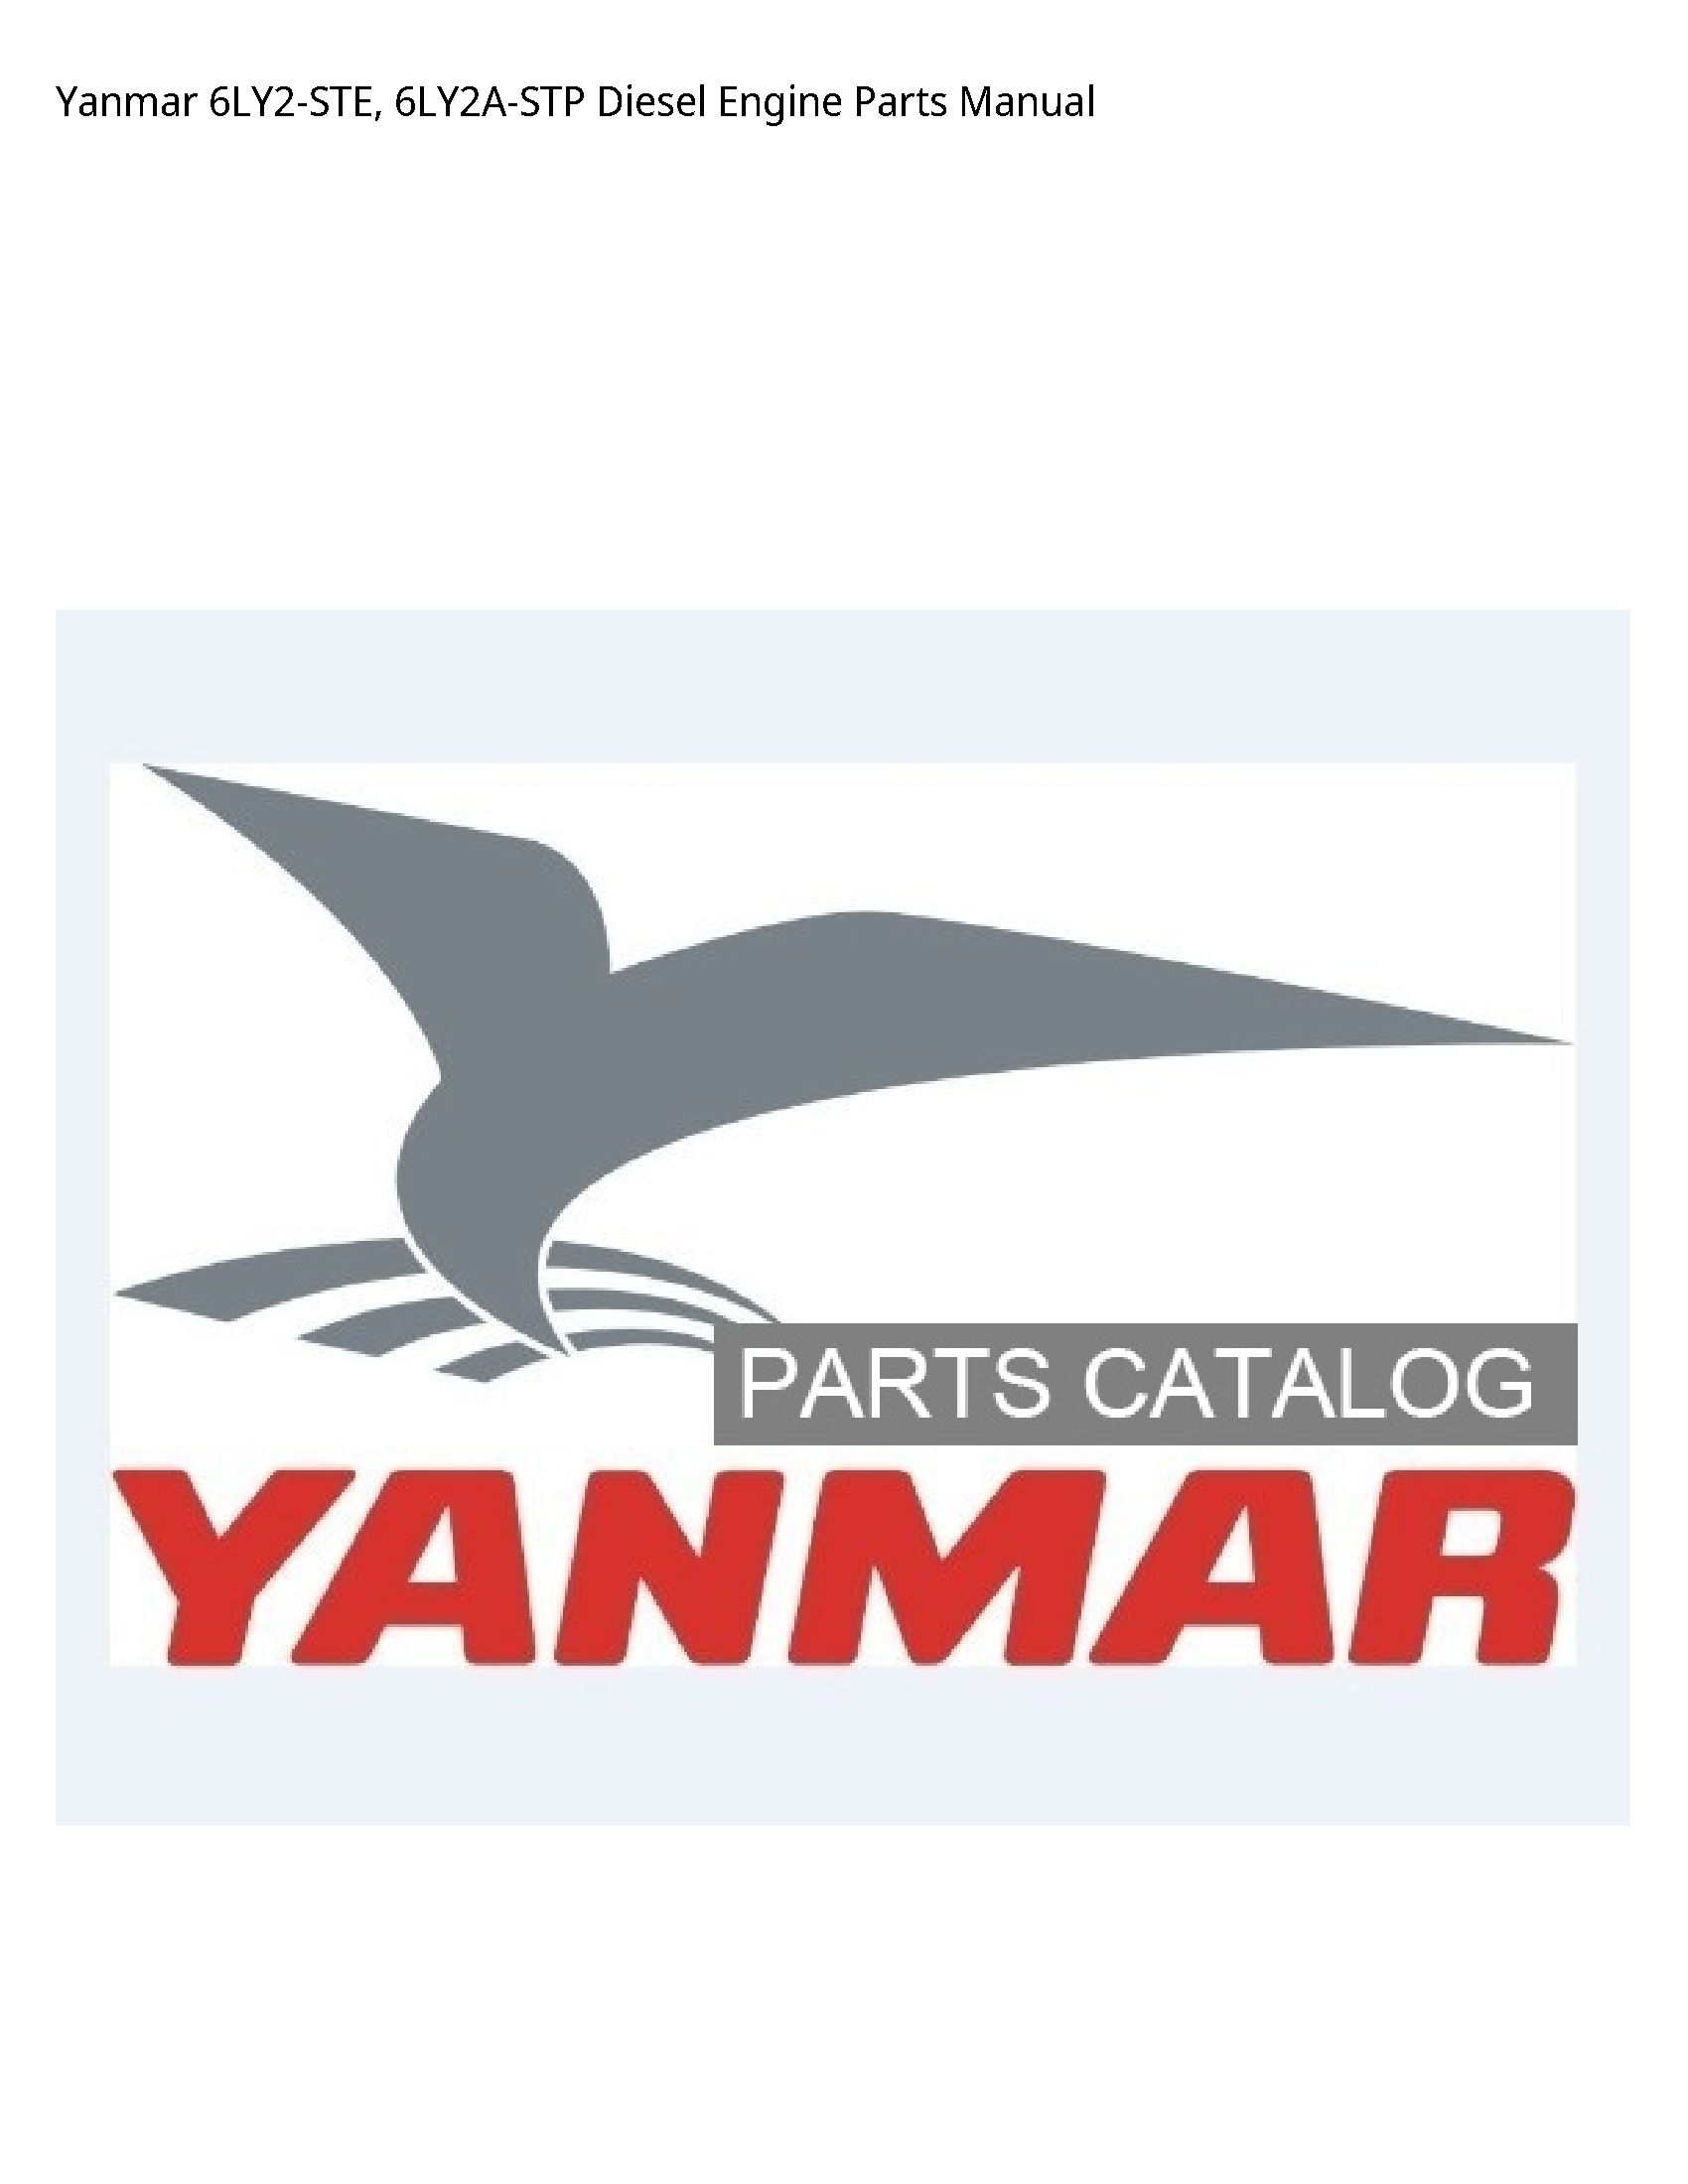 Yanmar 6LY2-STE Diesel Engine Parts manual